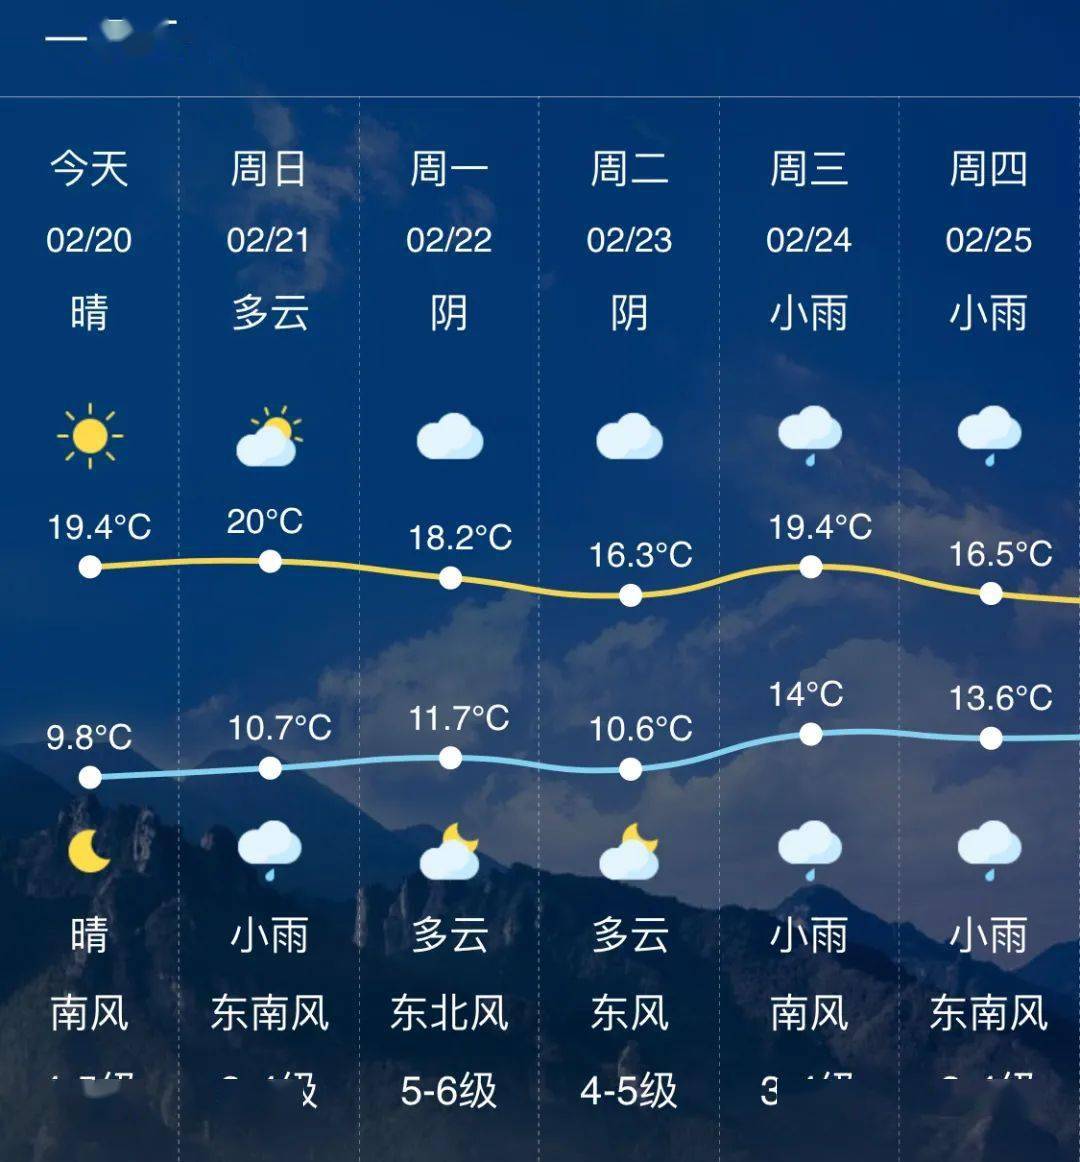 据乐清市气象台2月20日11时发布的天气预报,今天和明天晴,后天晴转